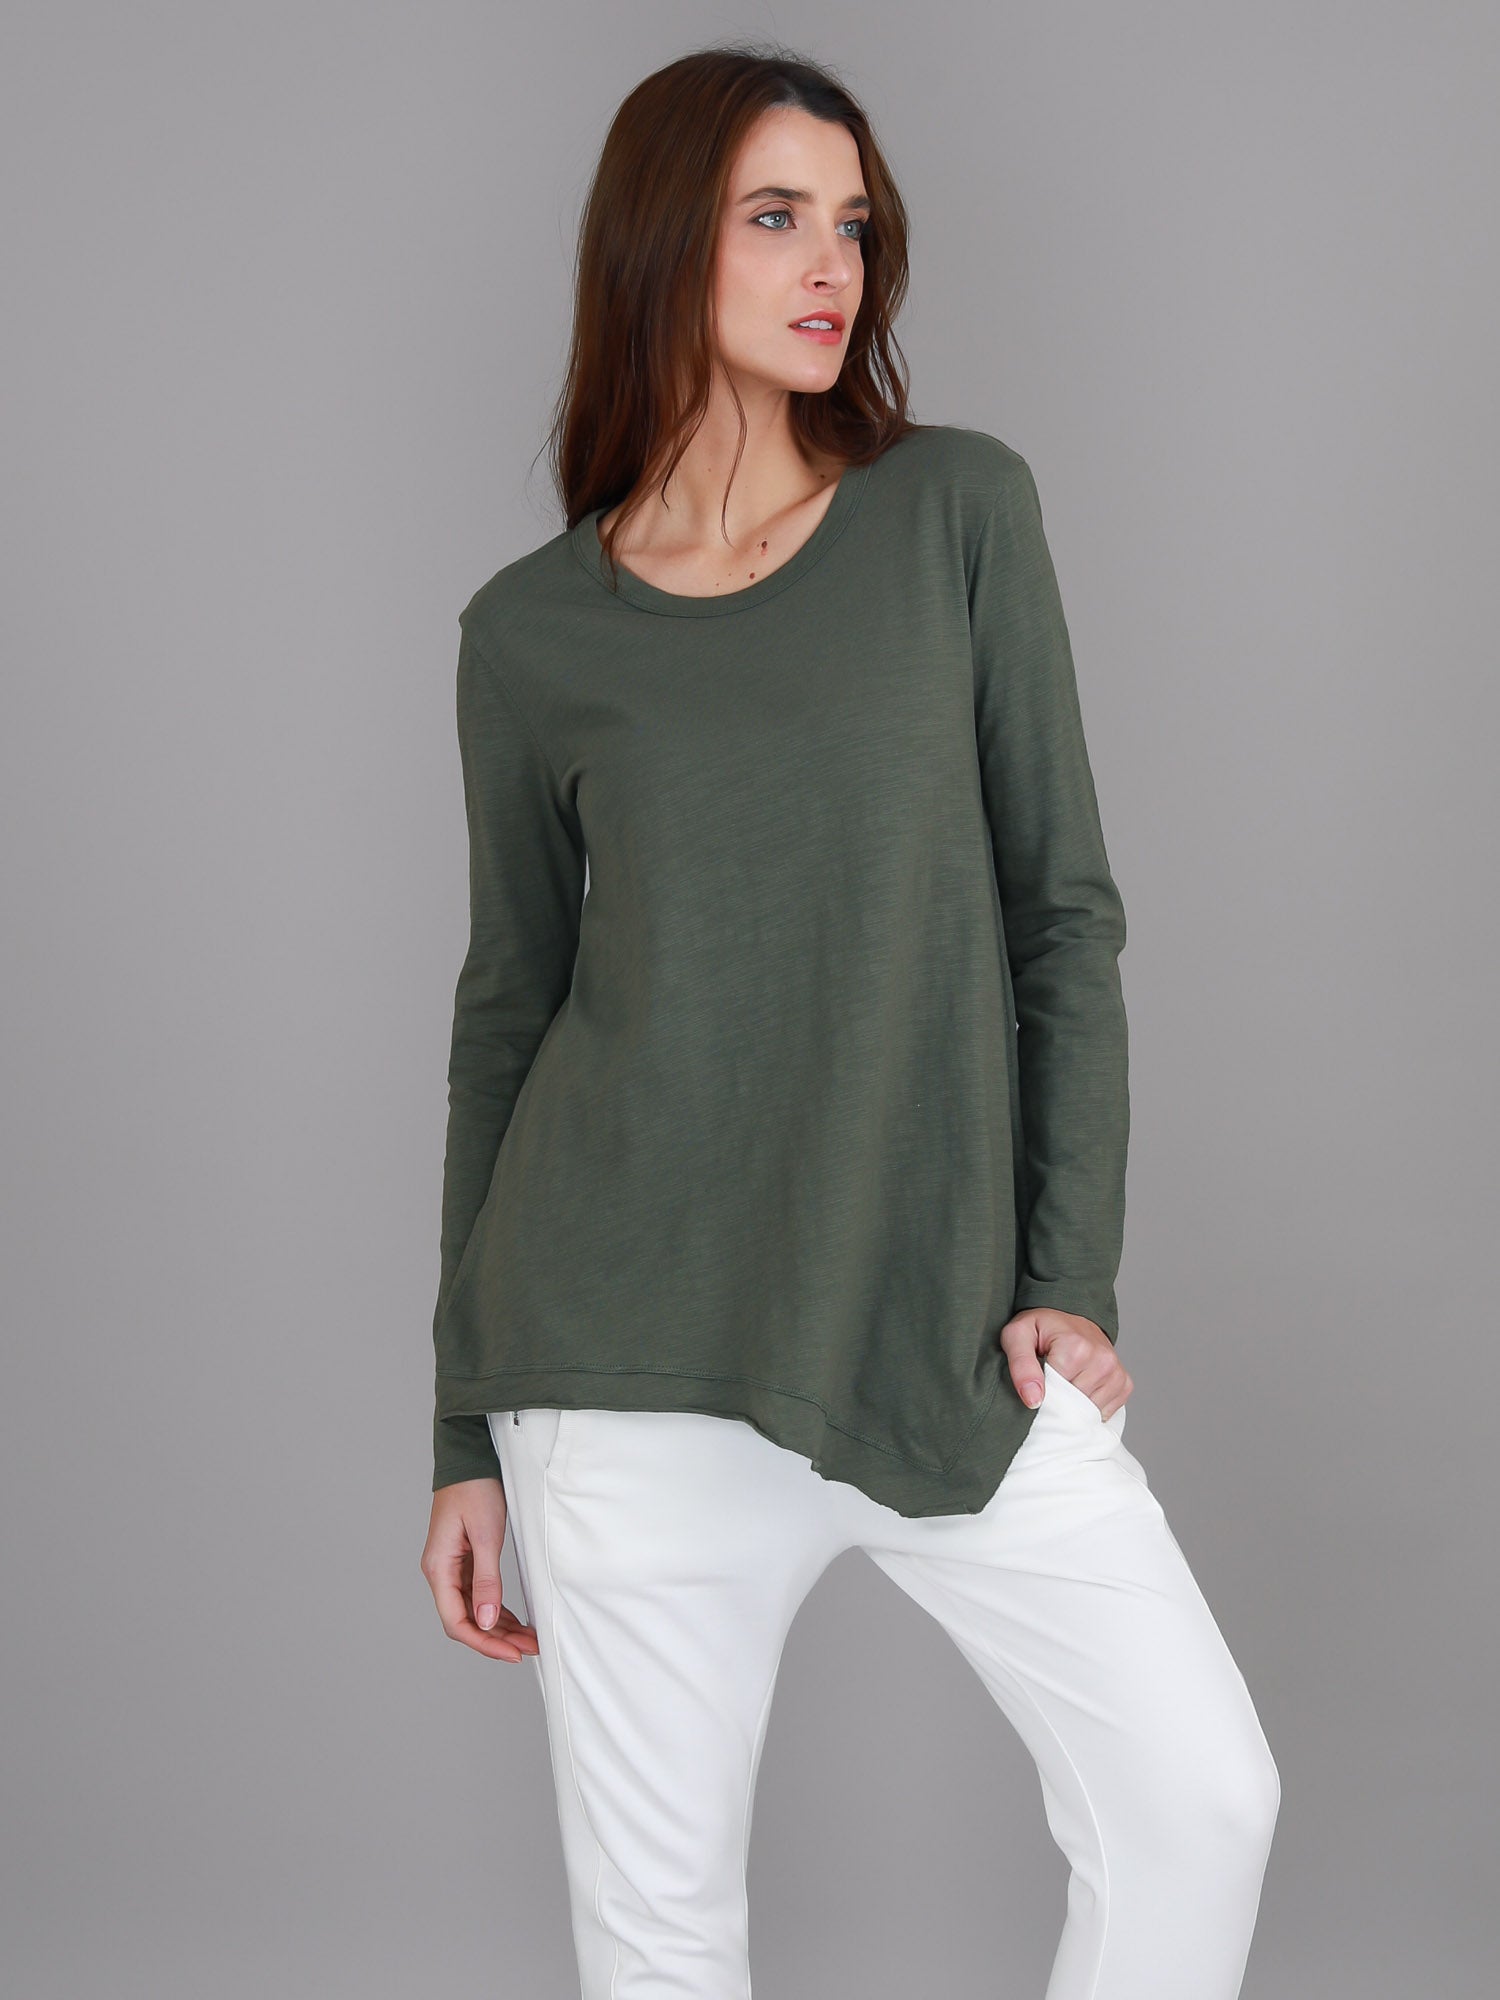 green long sleeve top #color_khaki